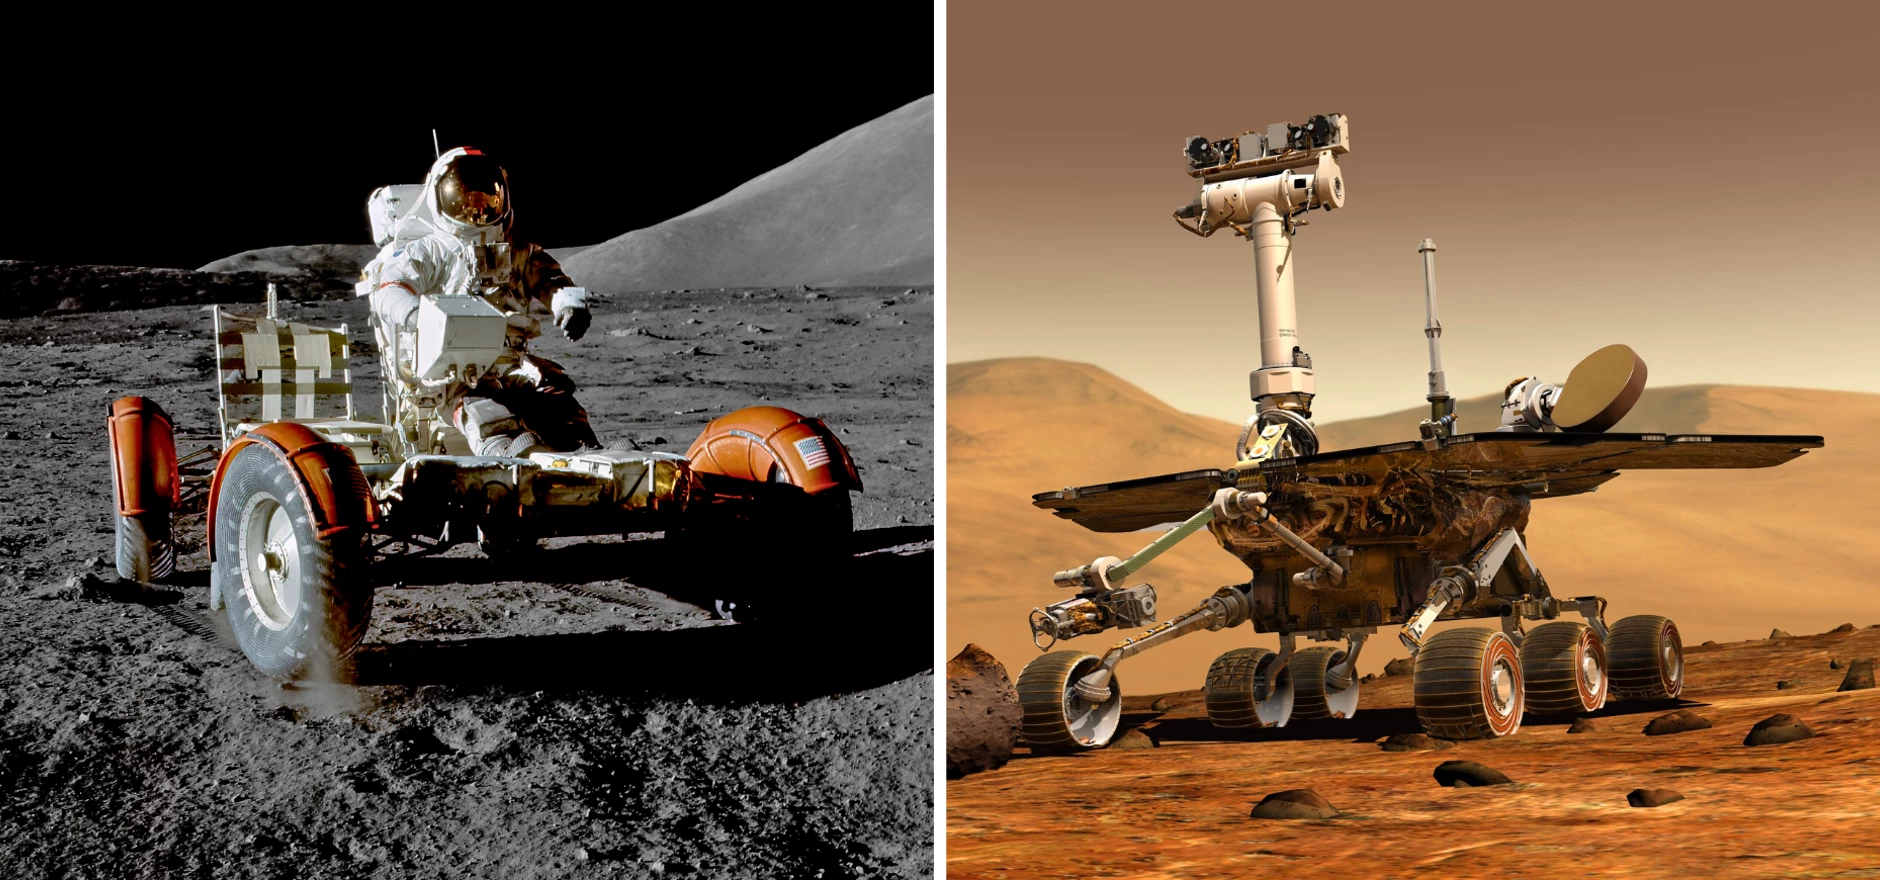 Lunar rover and NASA Mars rover